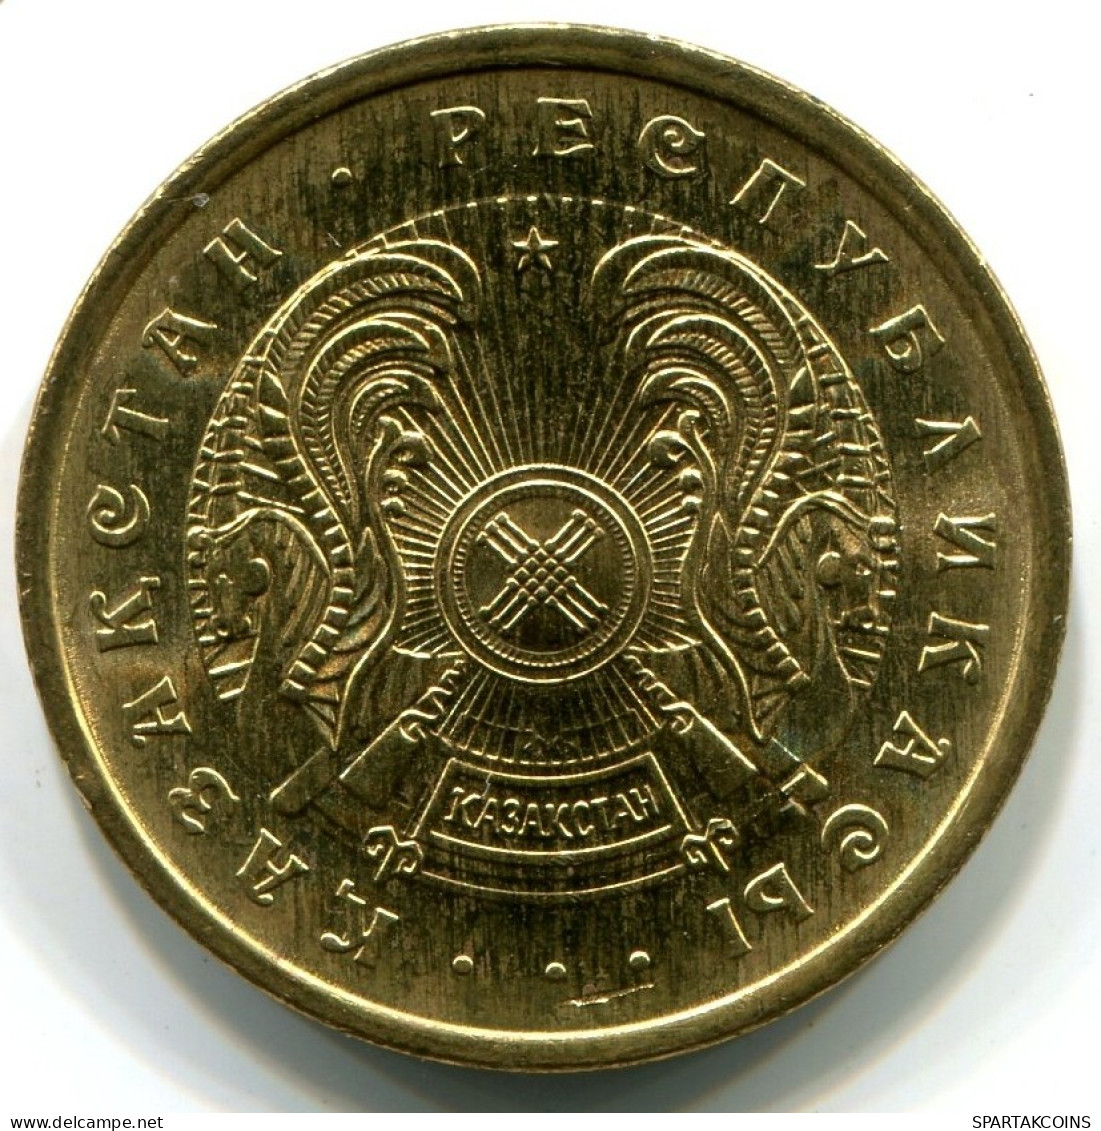 50 TIYN 1993 KAZAKHSTAN UNC Coin #5 #W11173.U.A - Kazachstan